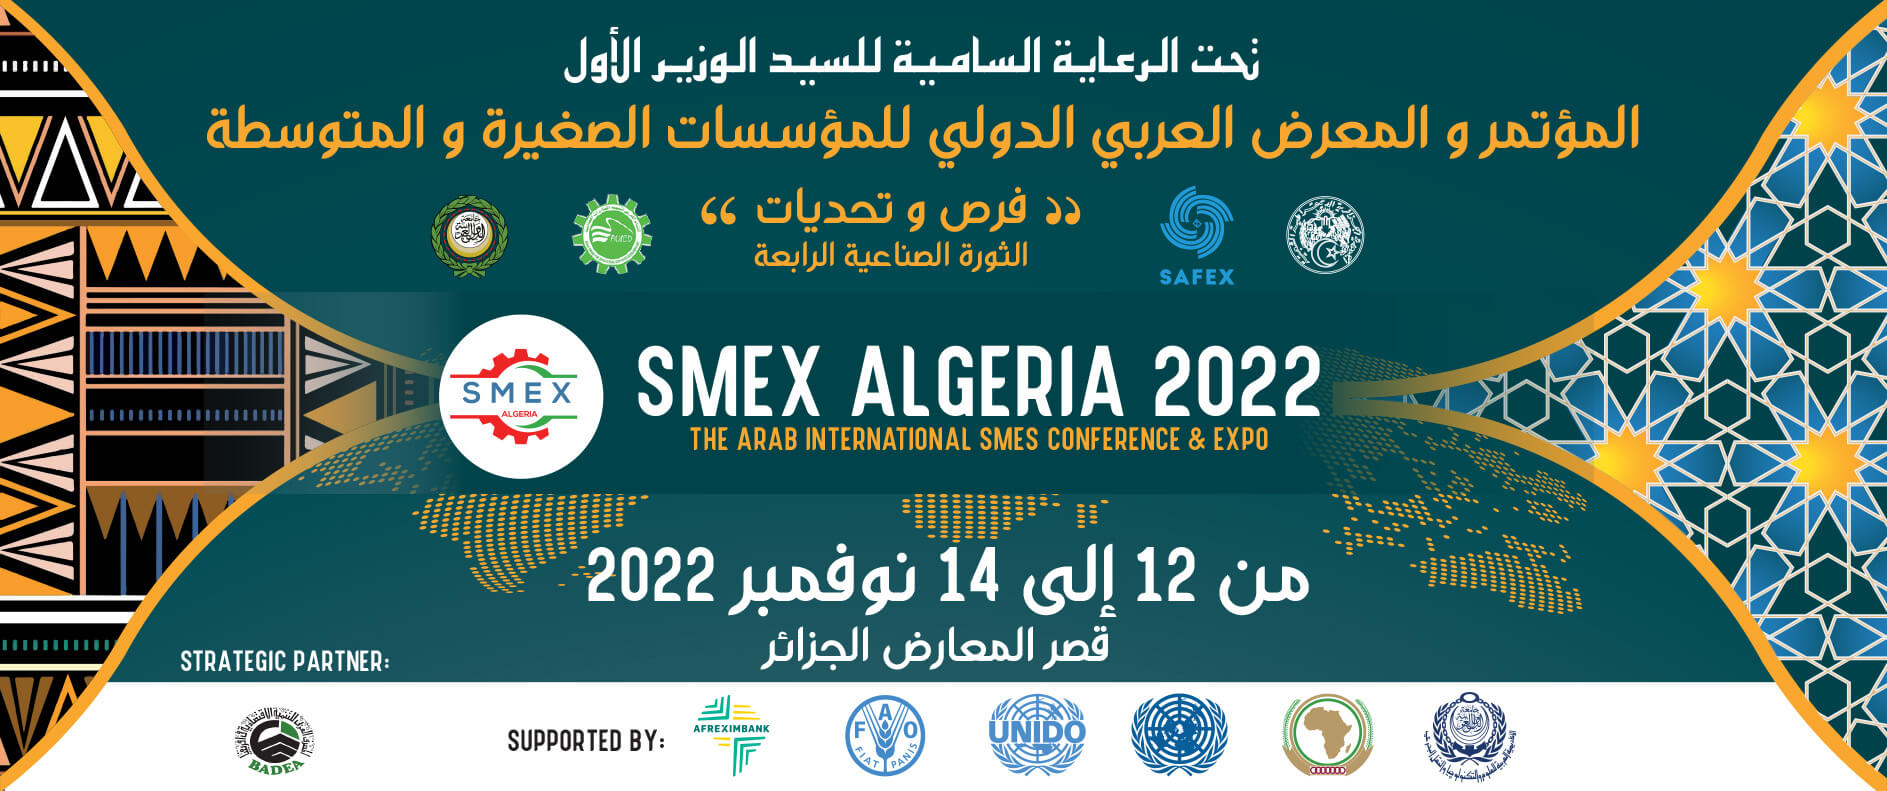 Lire la suite à propos de l’article Smex algeria :opportunités et défis de la nouvelle révolution industrielle 4.0